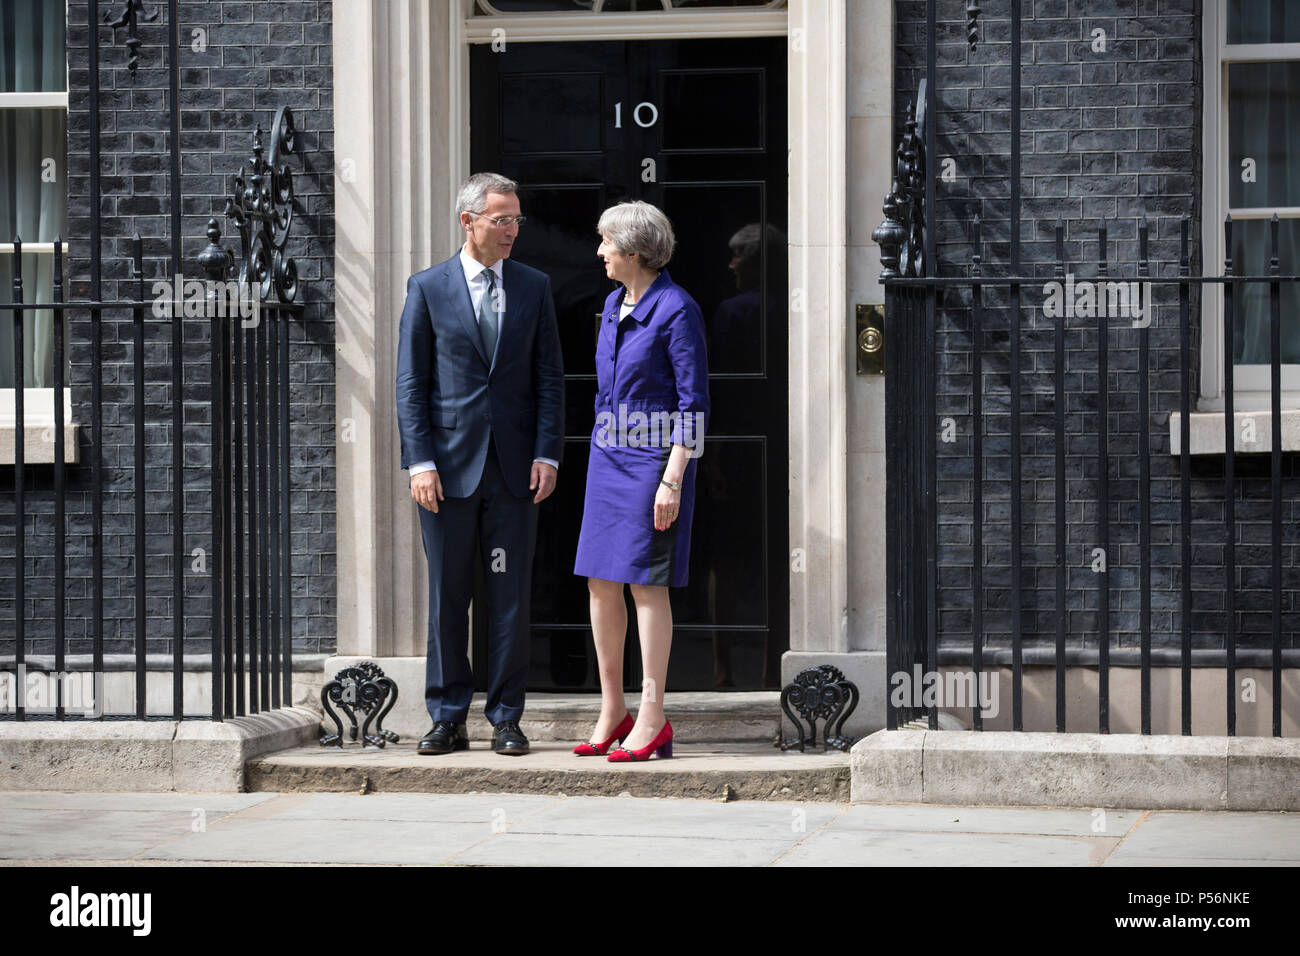 Theresa May, Premier Ministre du Royaume-Uni, photographiée au n° 10 Downing Street, au cours d'une visite de Jens Stoltenberg, le Secrétaire général de l'OTAN. Banque D'Images